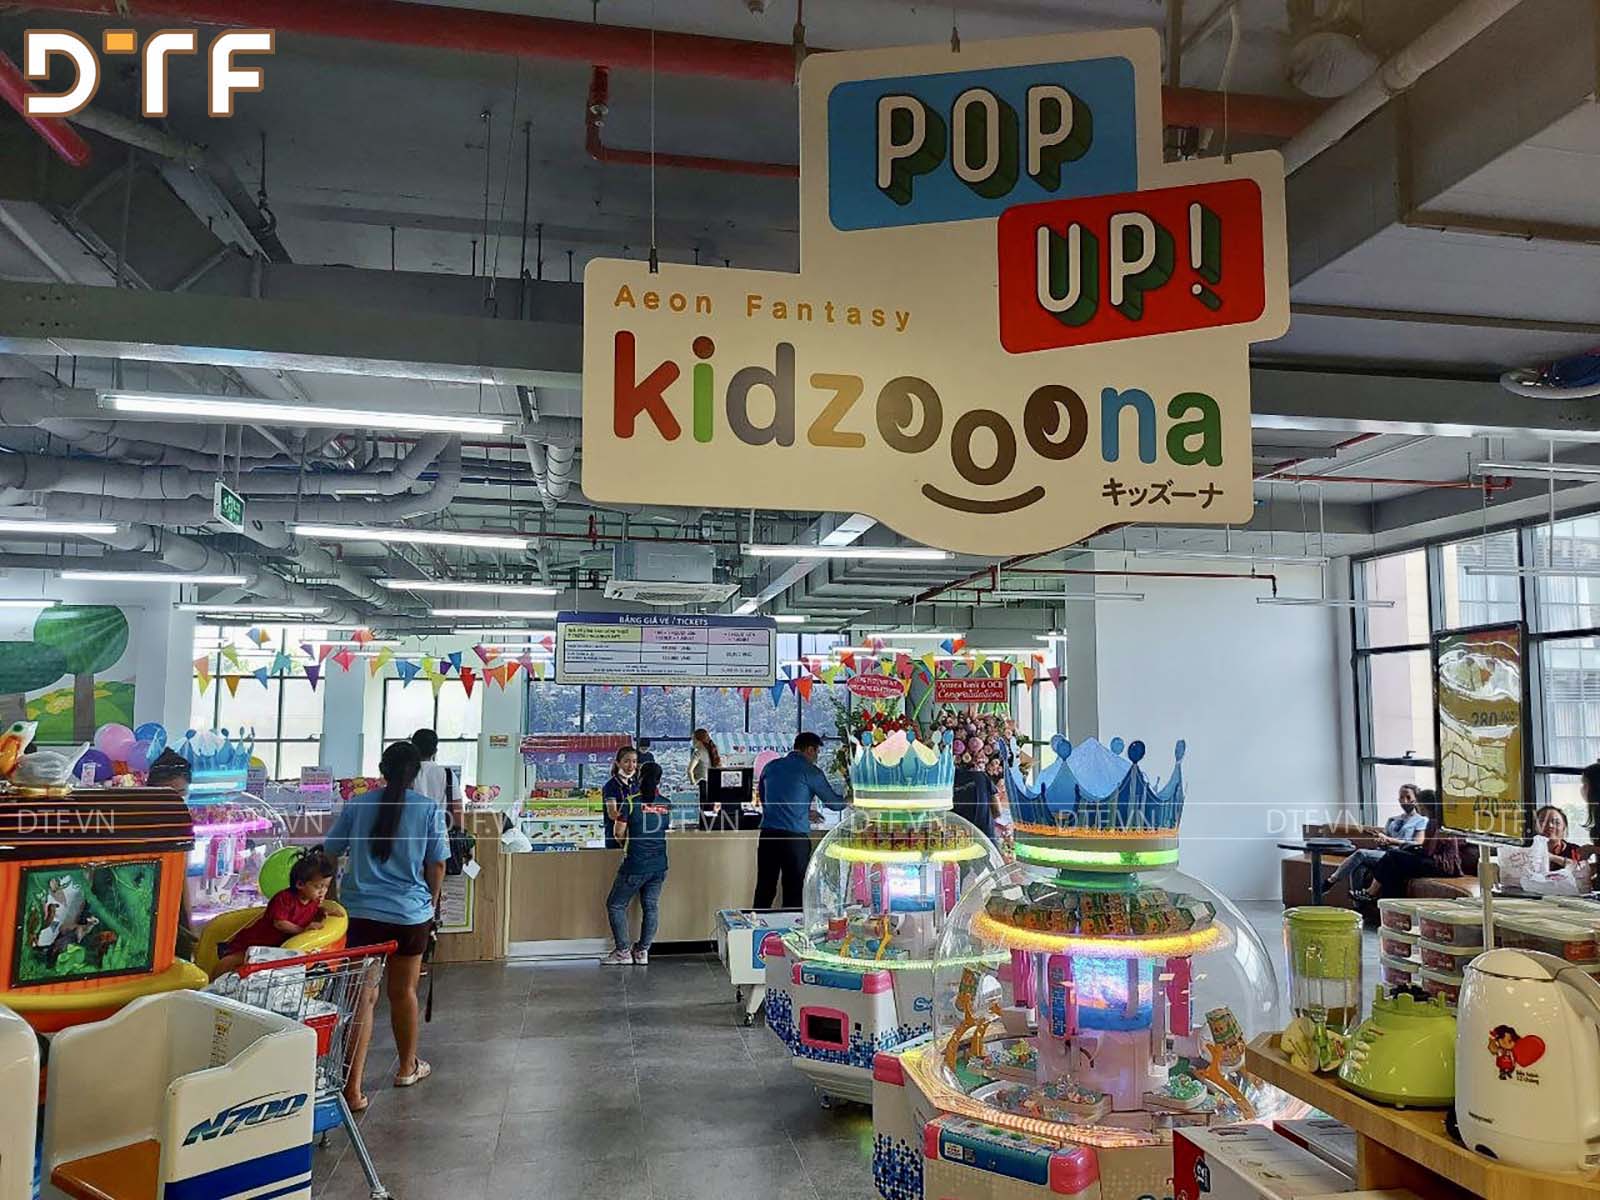 Thi công khu vui chơi trẻ em Popup kidzooona tại quận 2 TP Hồ Chí Minh